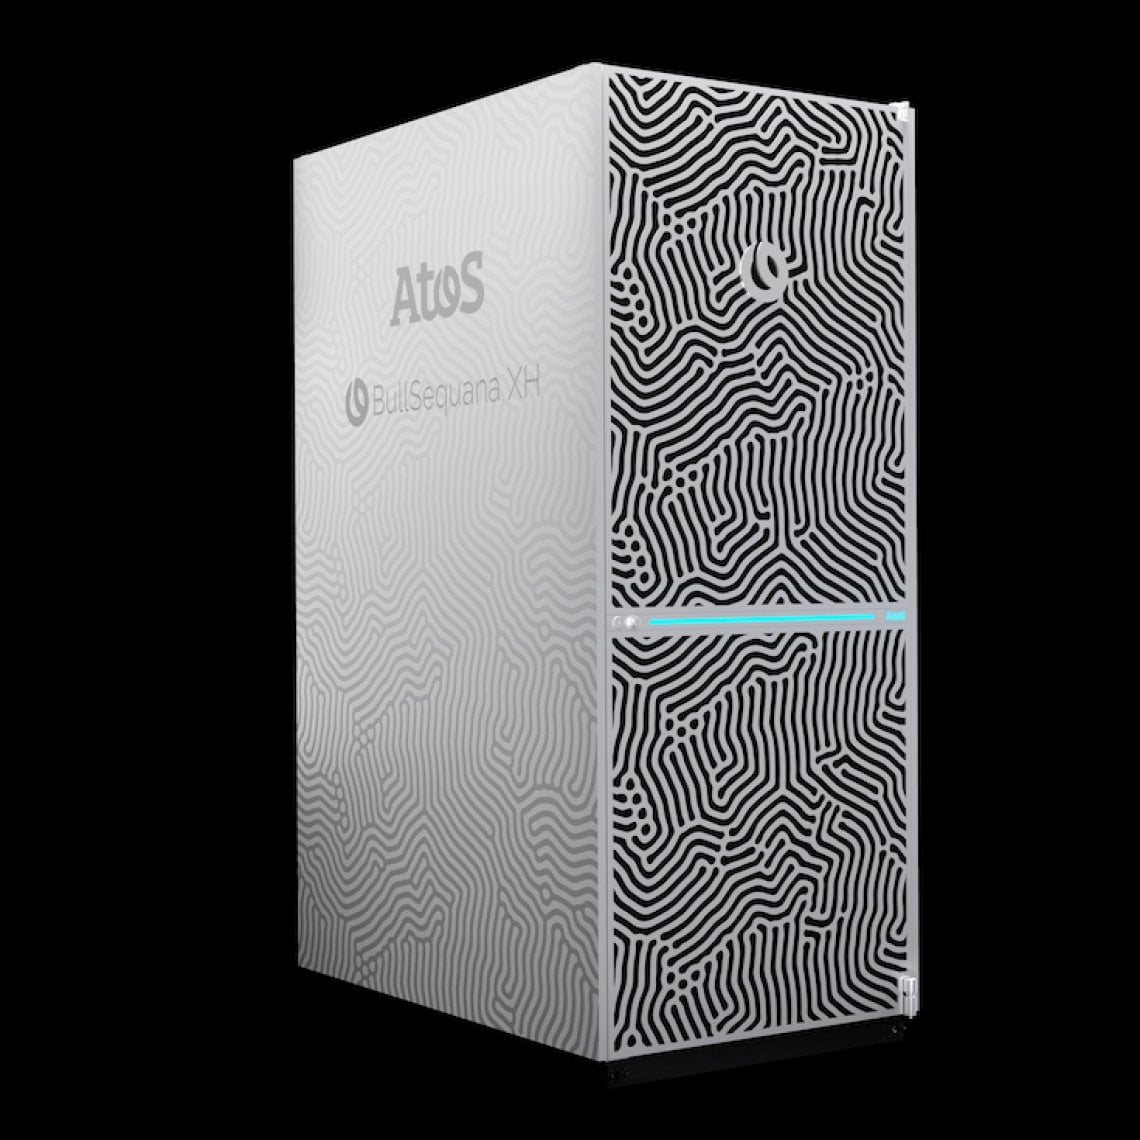 BullSequana XH3000, il supercomputer di Atos spinge la ricerca scientifica